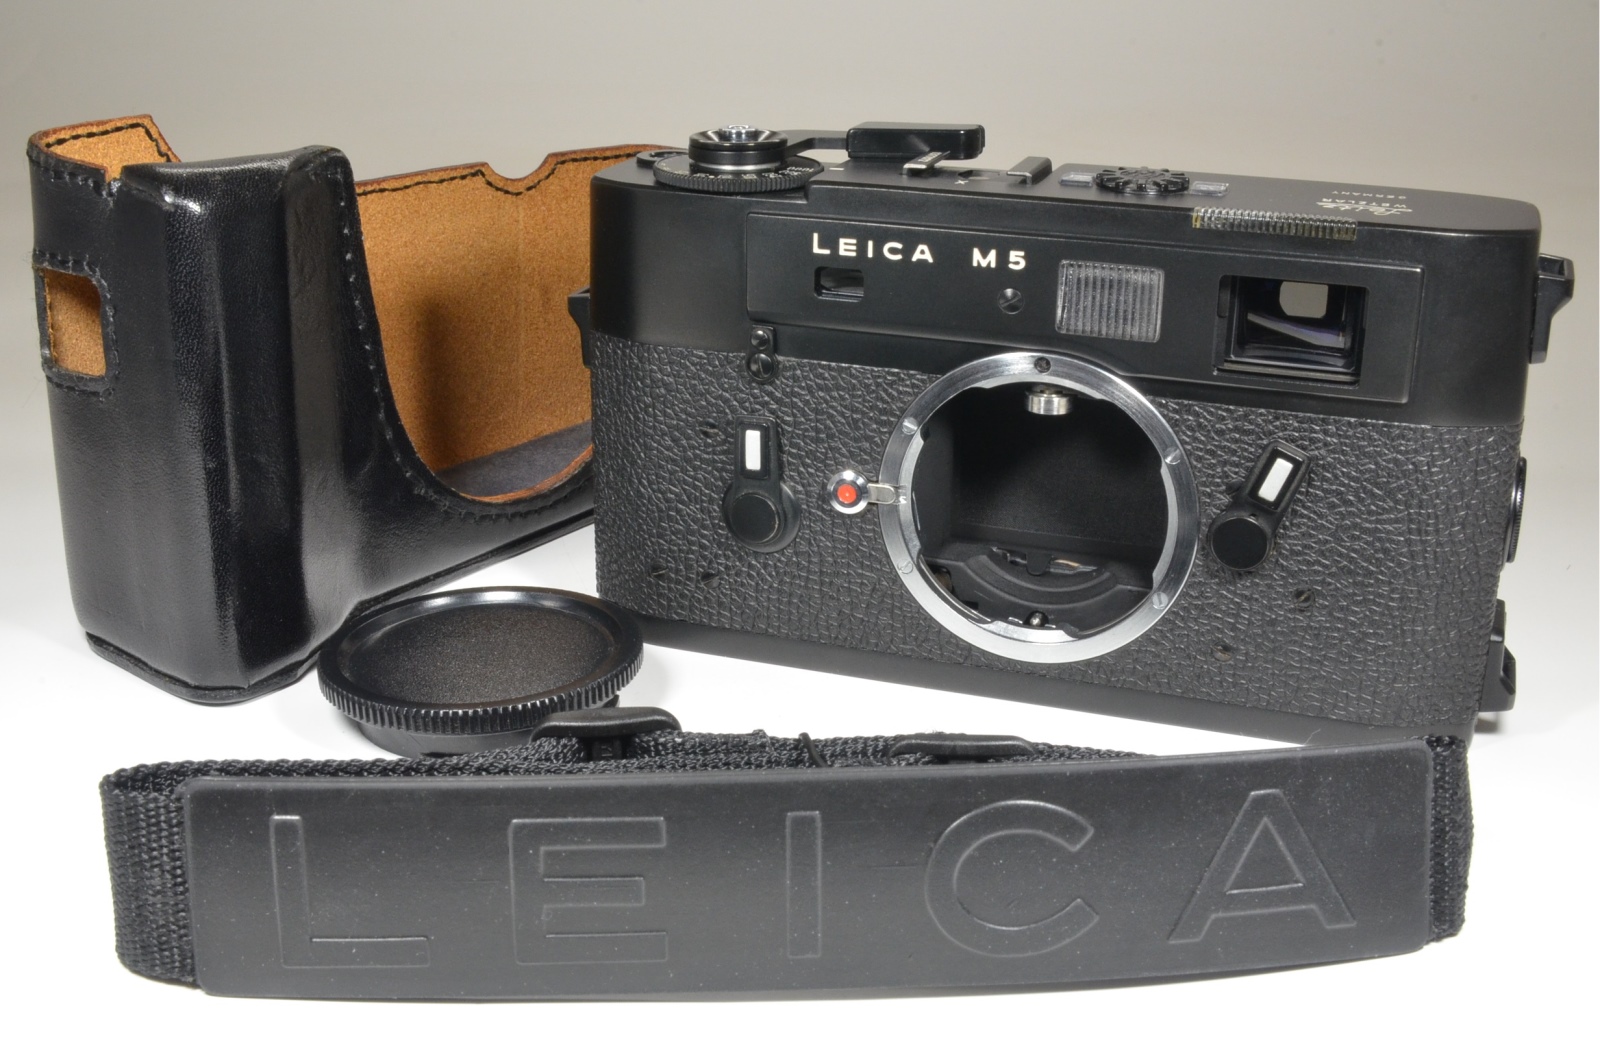 leica m5 black 3 lug serial no.1377872 year 1973 w/ half case